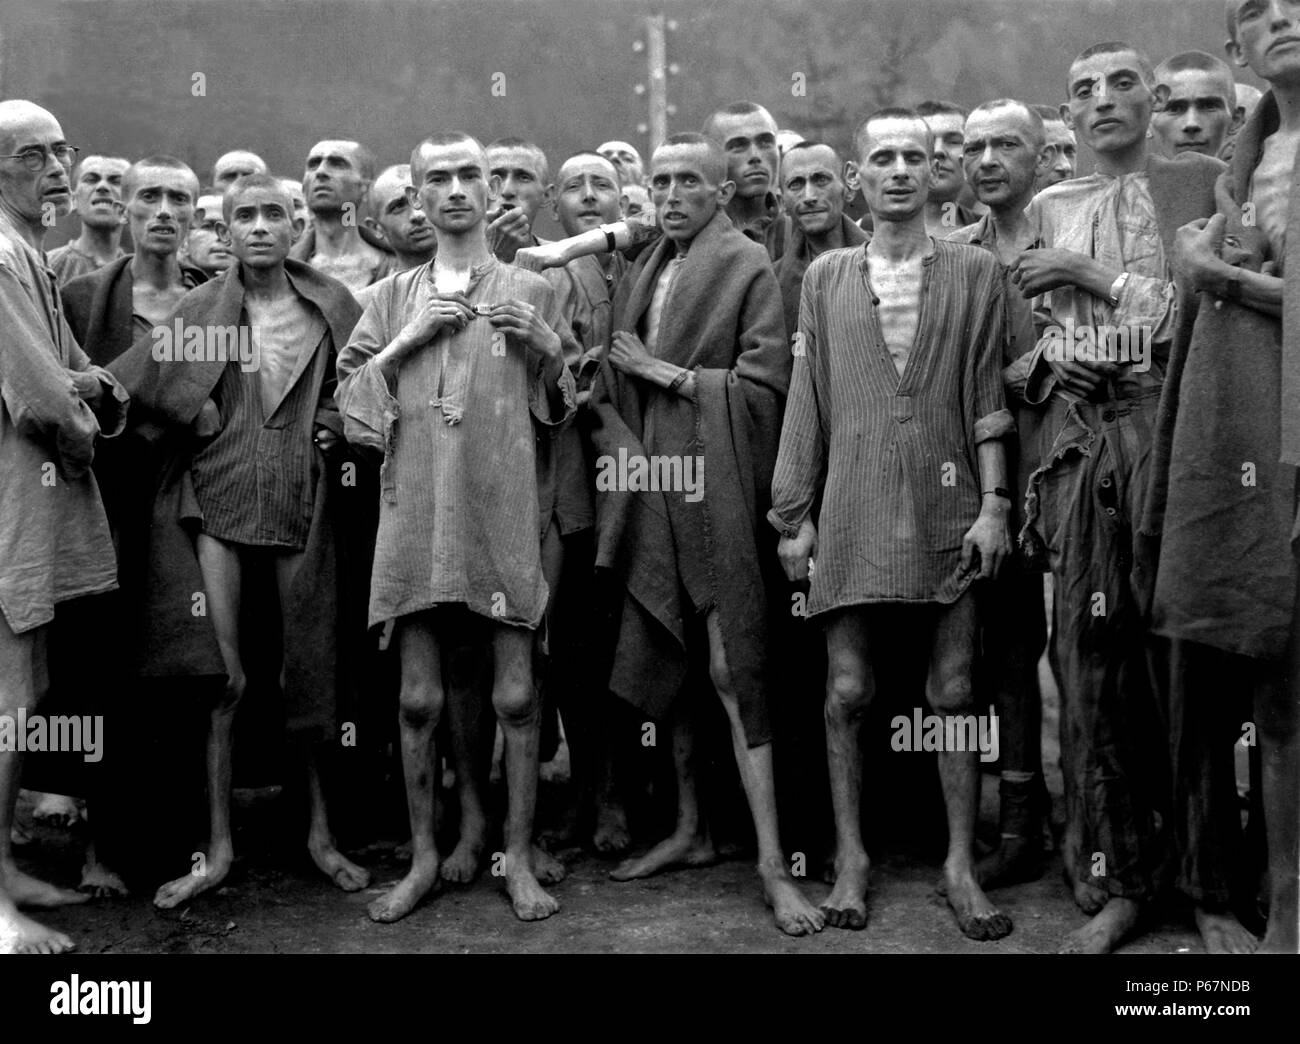 Männliche Kriegsgefangene, ihr Überleben und Befreiung Feiern vom Berga Konzentrationslager. 1945 datiert, am Ende des Zweiten Weltkrieges. Stockfoto